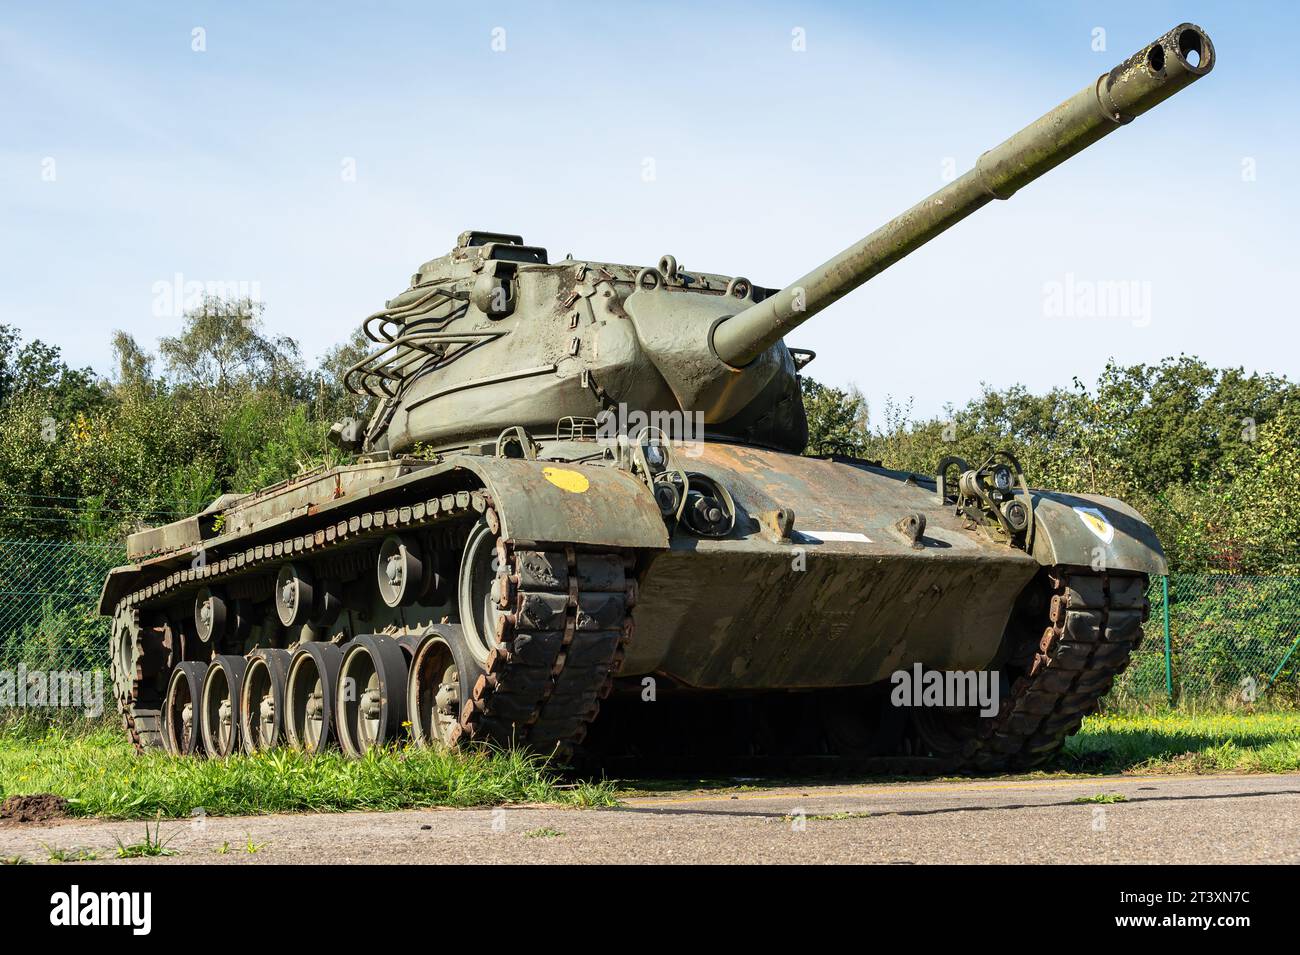 Il carro medio M46 Patton equipaggiato con un cannone da 90 mm. Foto Stock